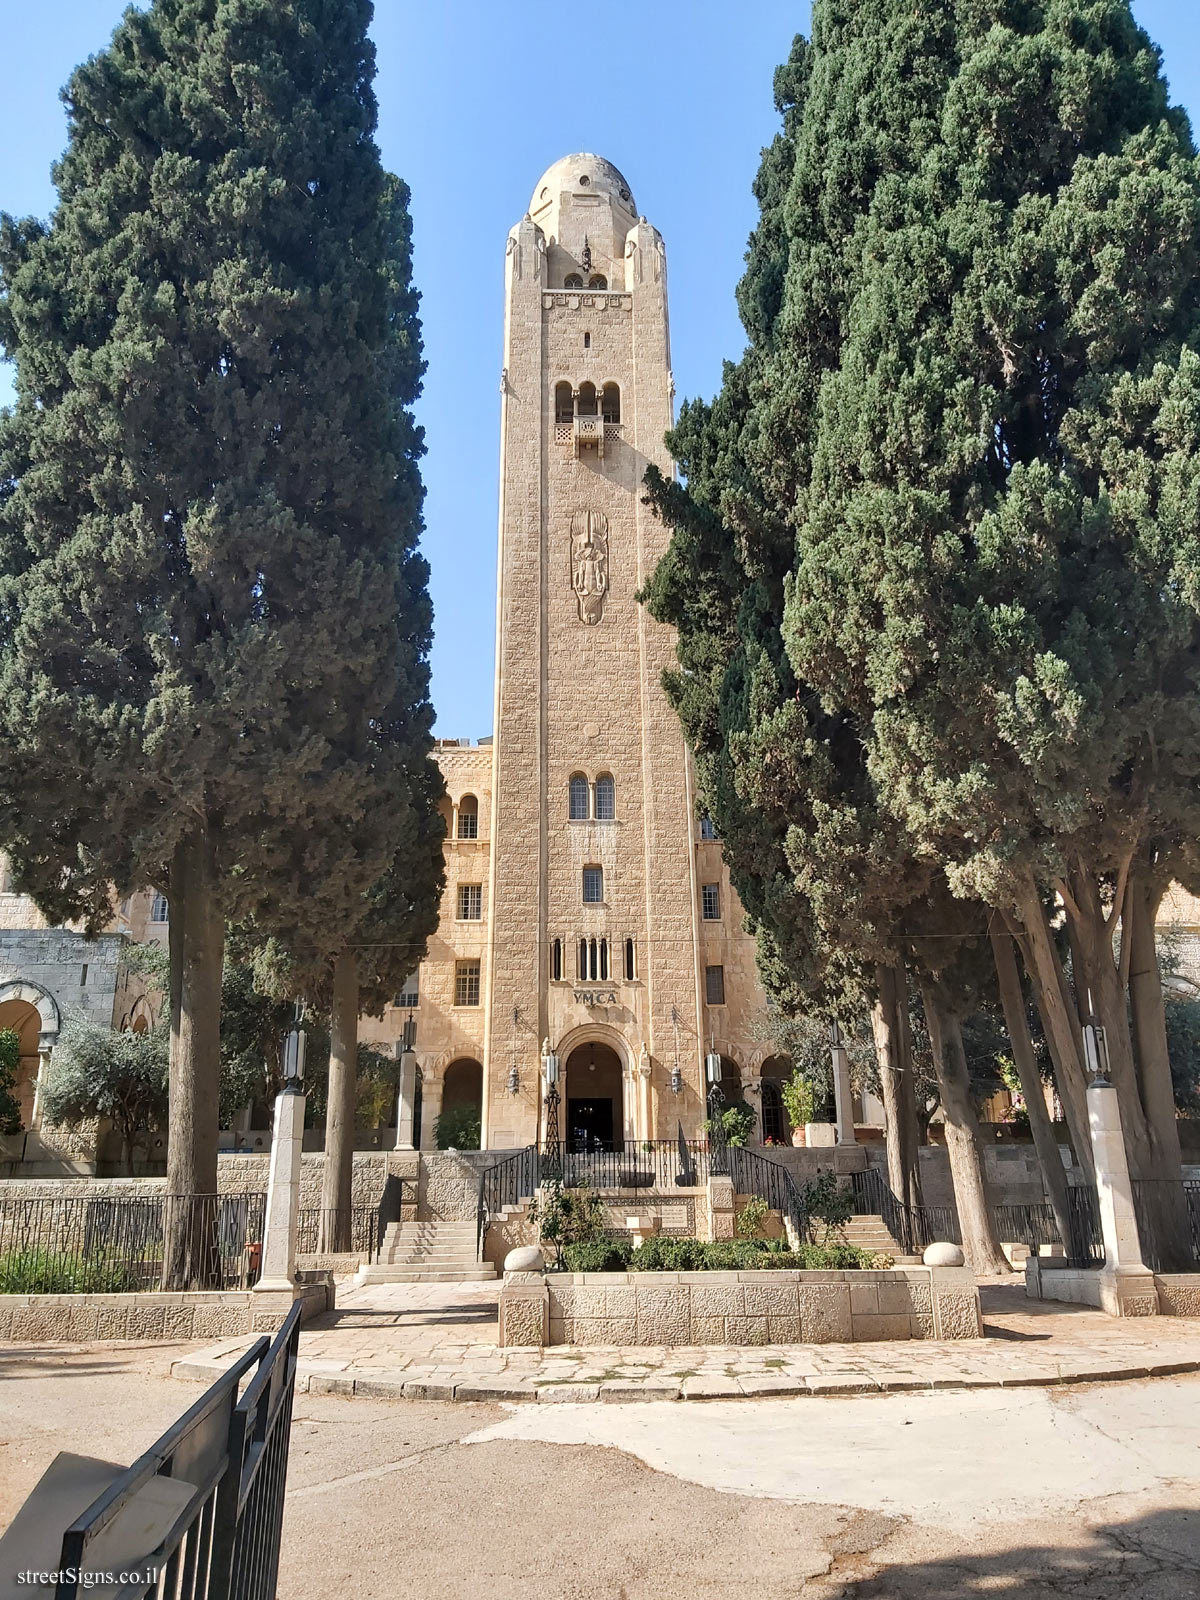 Jerusalem - The Built Heritage - Y.M.C.A. Building - King David St 26, Jerusalem, Israel